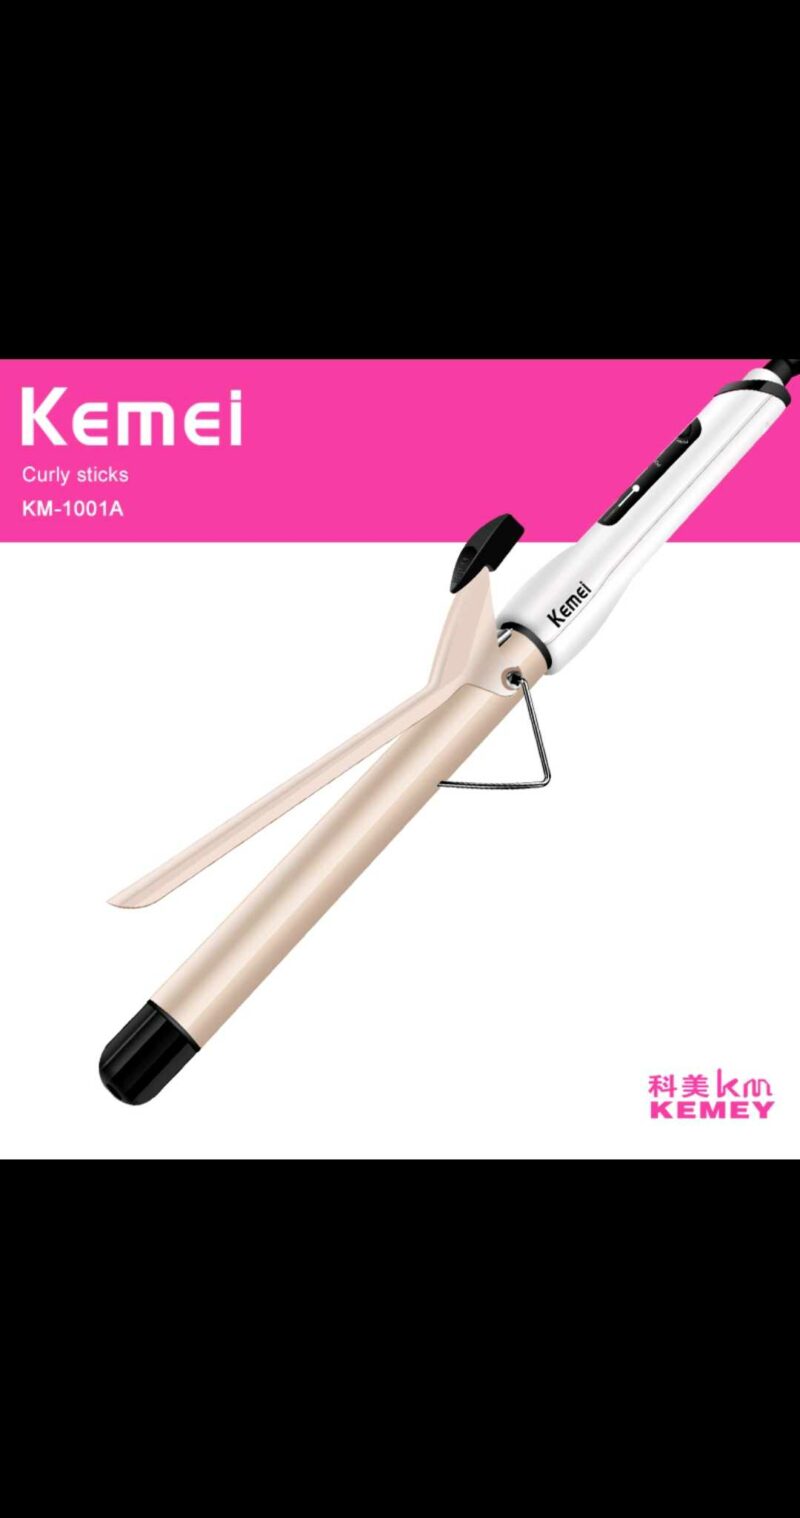 Ψαλίδι μαλλιών - KM-1001A - Kemei